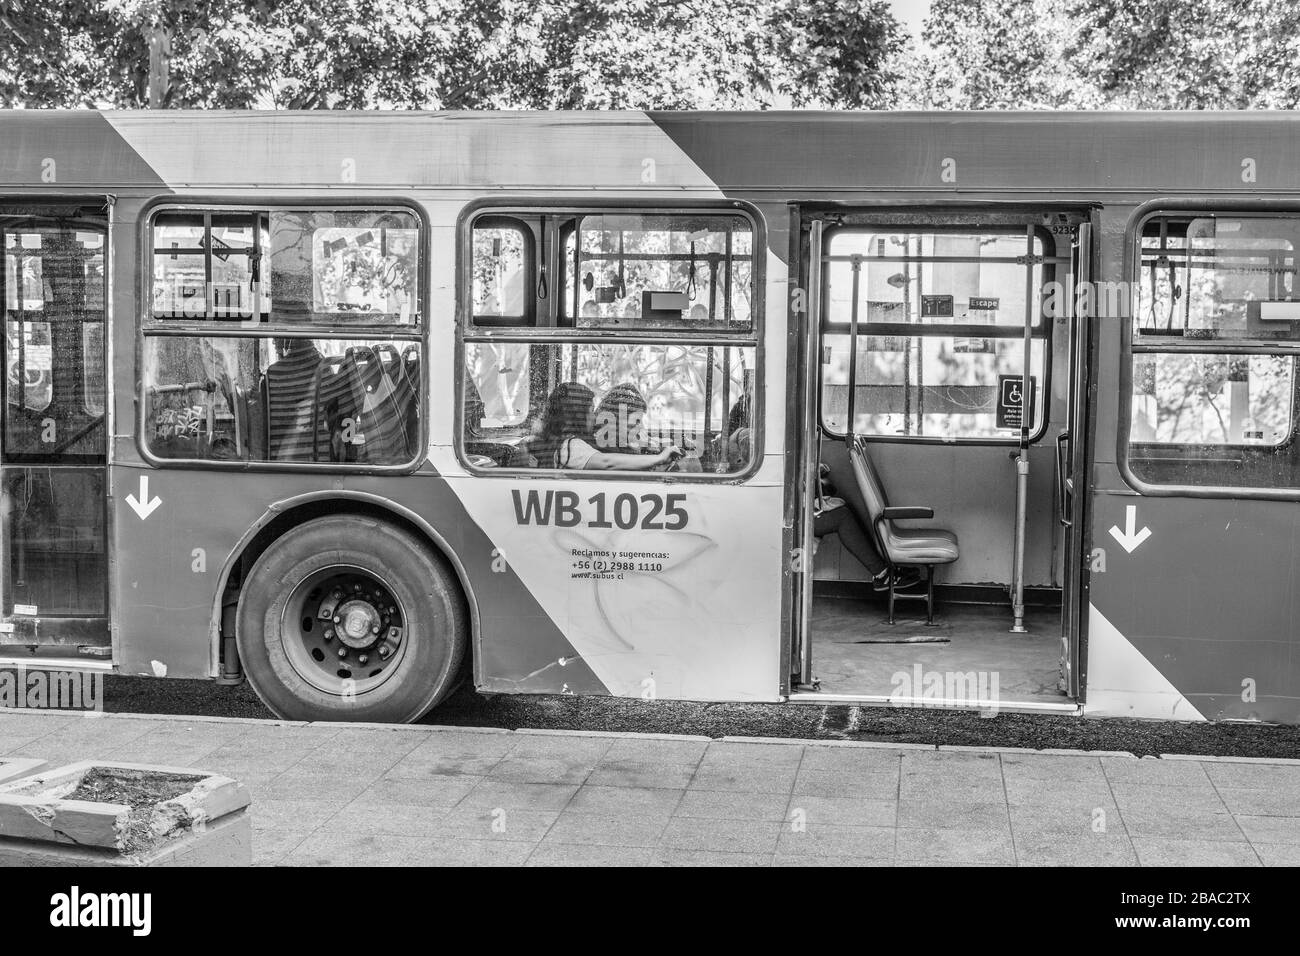 Les transports publics avec des bus vides dans les rues Providencia au cours des dernières heures avant que le COVID-19 Coronavirus ne verrouille Santiago, Chili, 26.03.2020 Banque D'Images